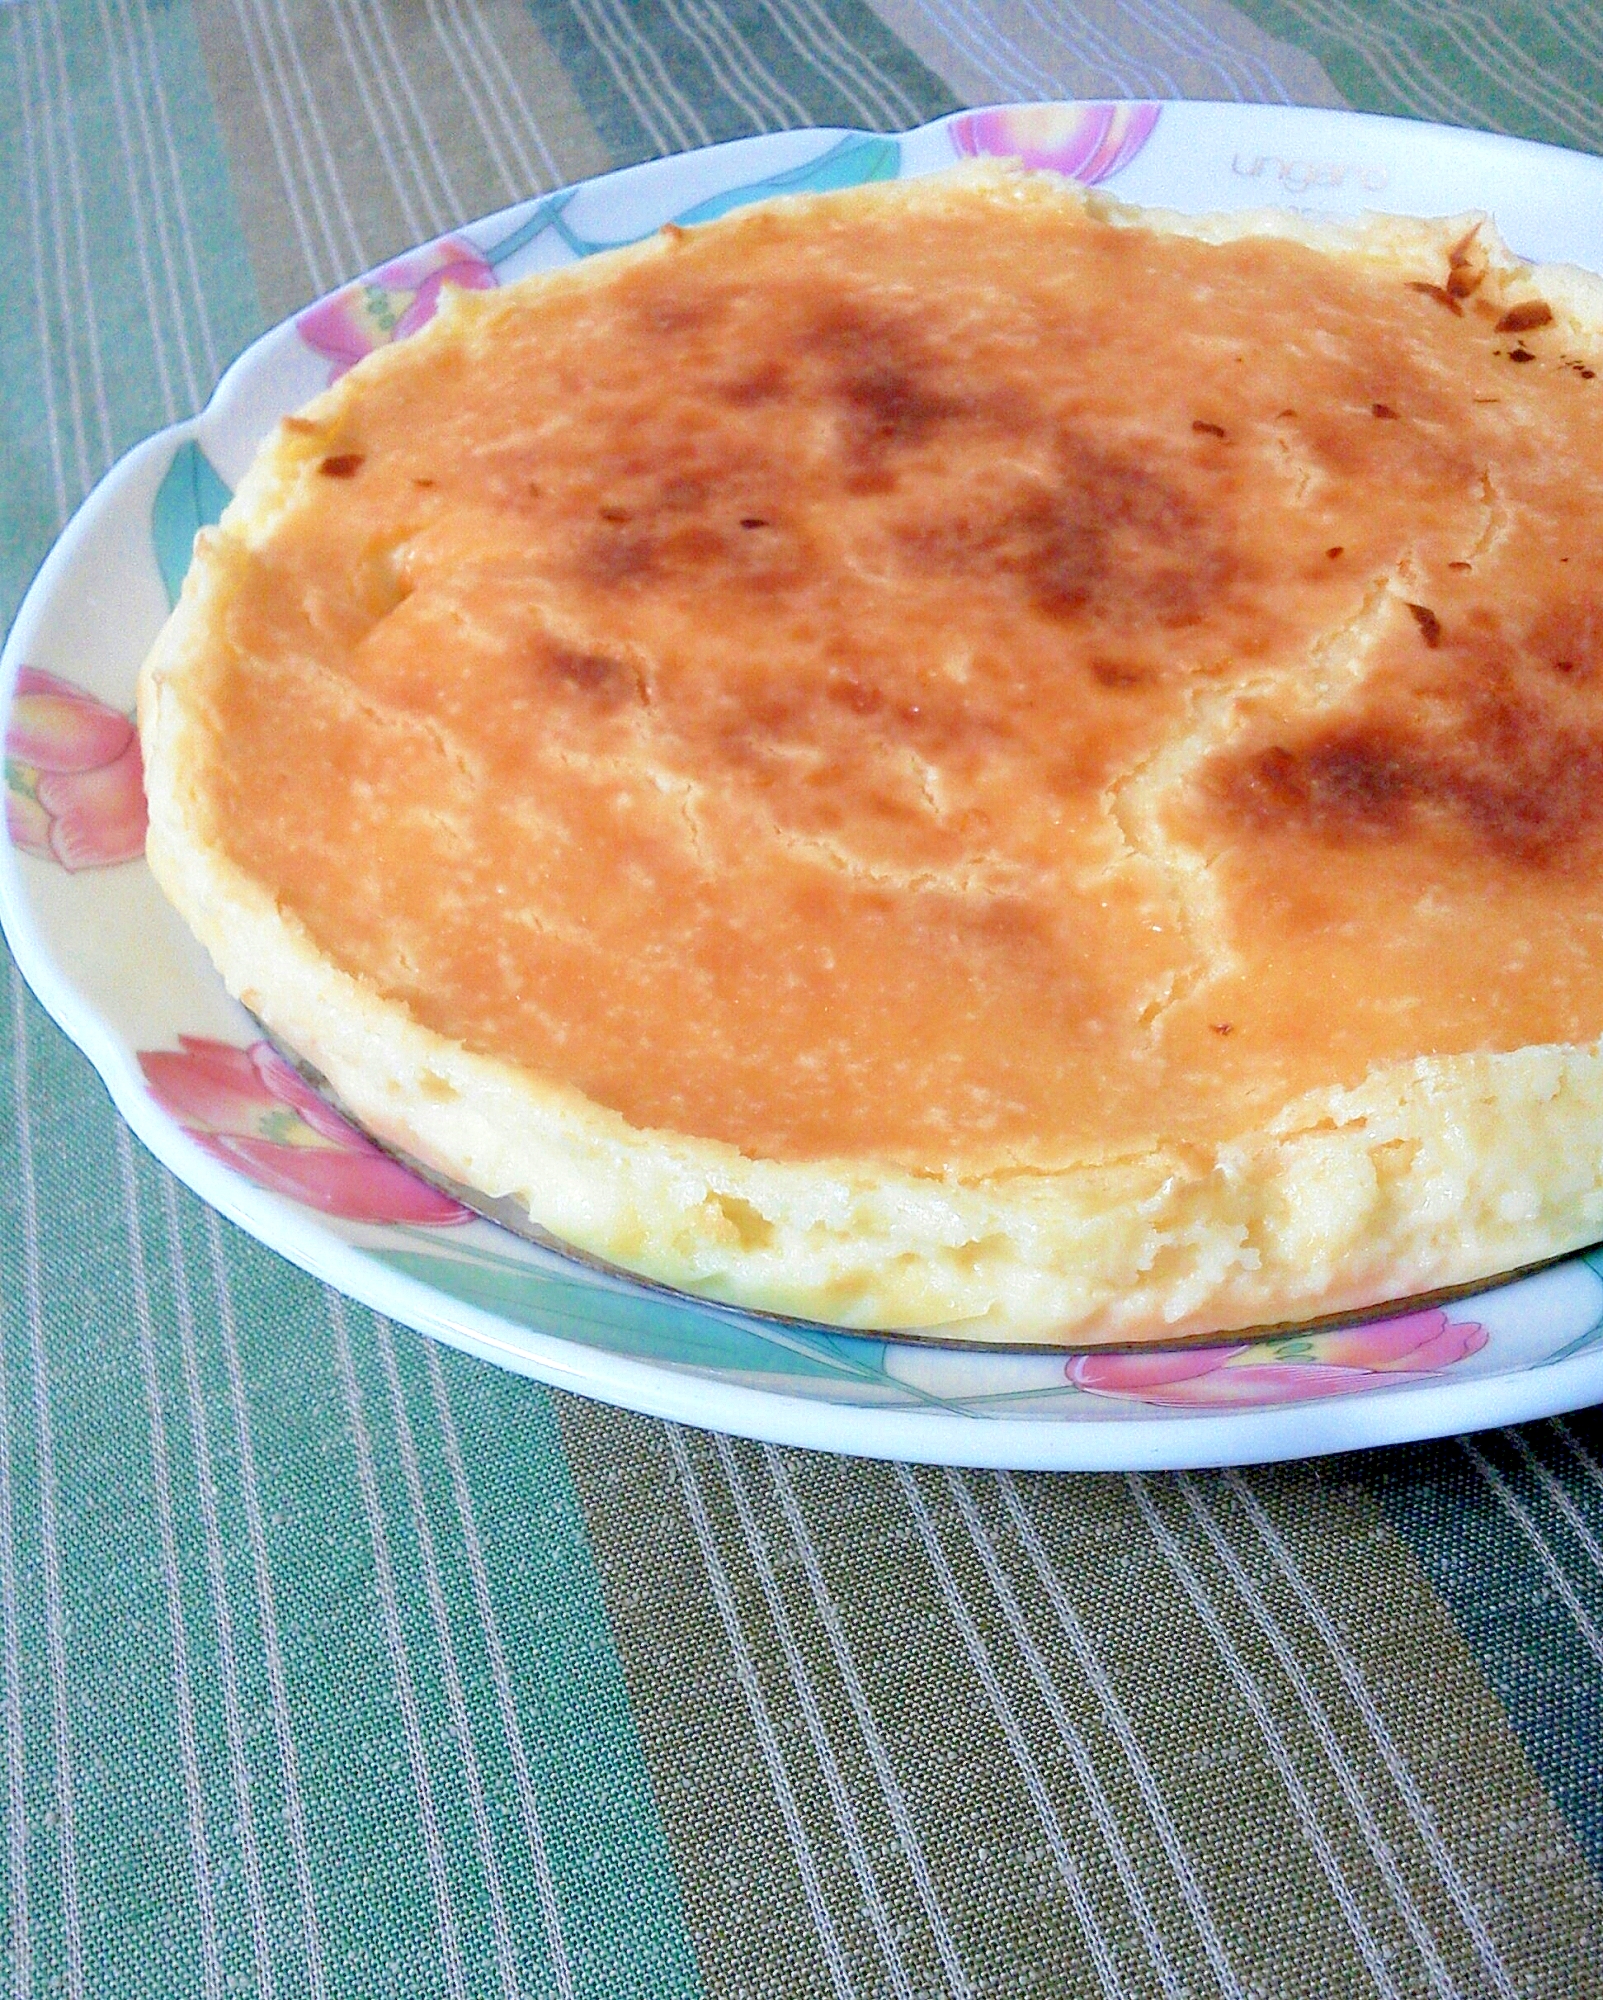 卵なしで 濃厚 ベイクドチーズケーキ レシピ 作り方 By Popnpoon 楽天レシピ